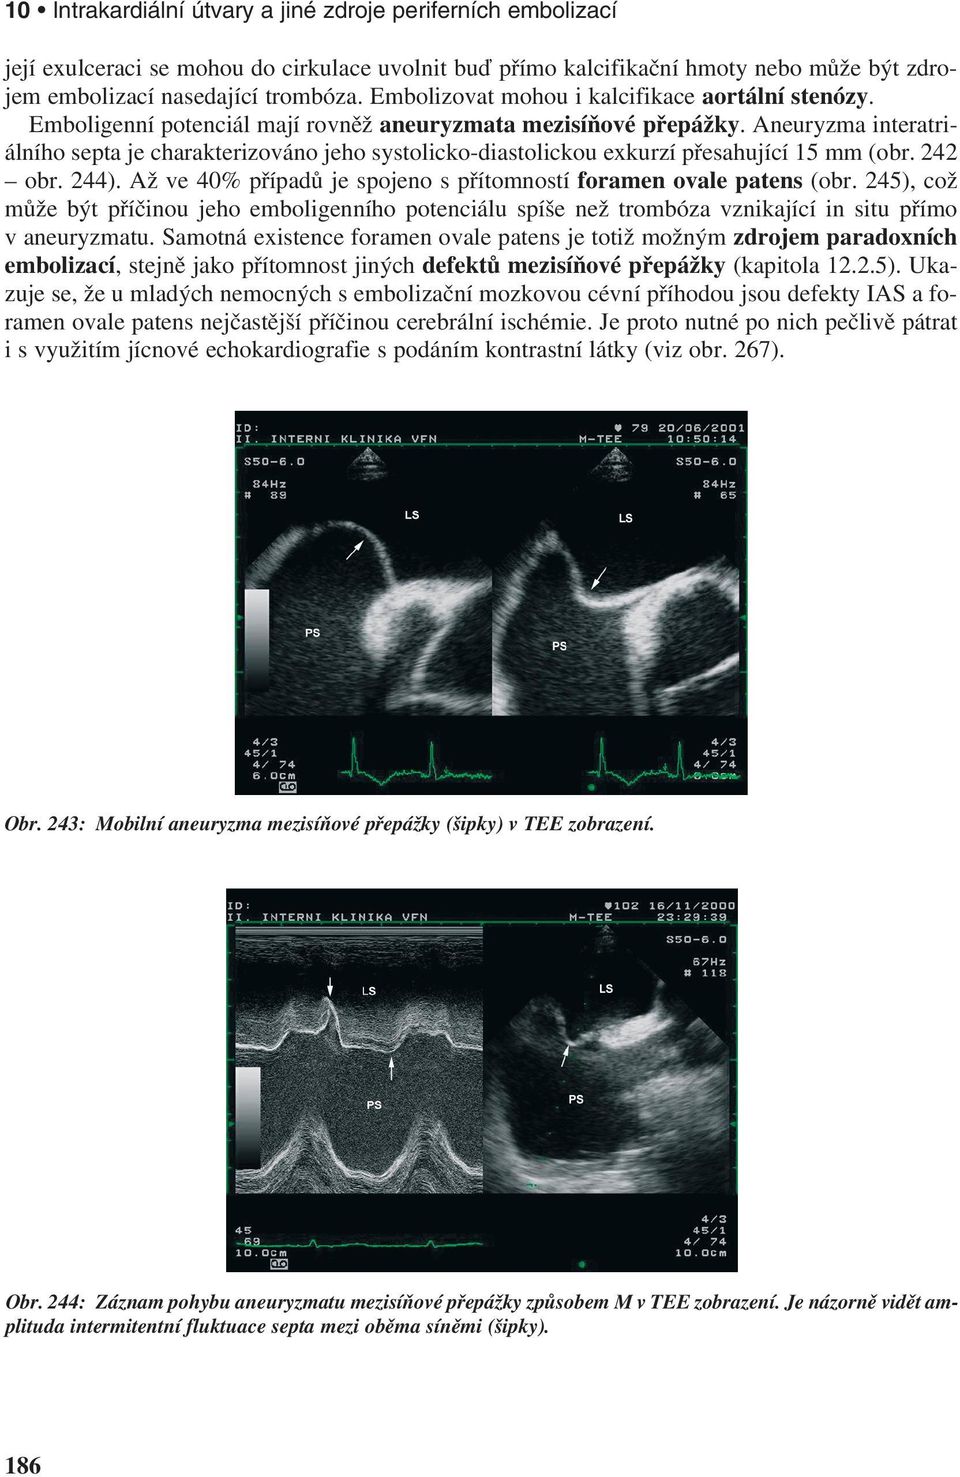 Aneuryzma interatriálního septa je charakterizováno jeho systolicko-diastolickou exkurzí přesahující 15 mm (obr. 242 obr. 244). Až ve 40% případů je spojeno s přítomností foramen ovale patens (obr.